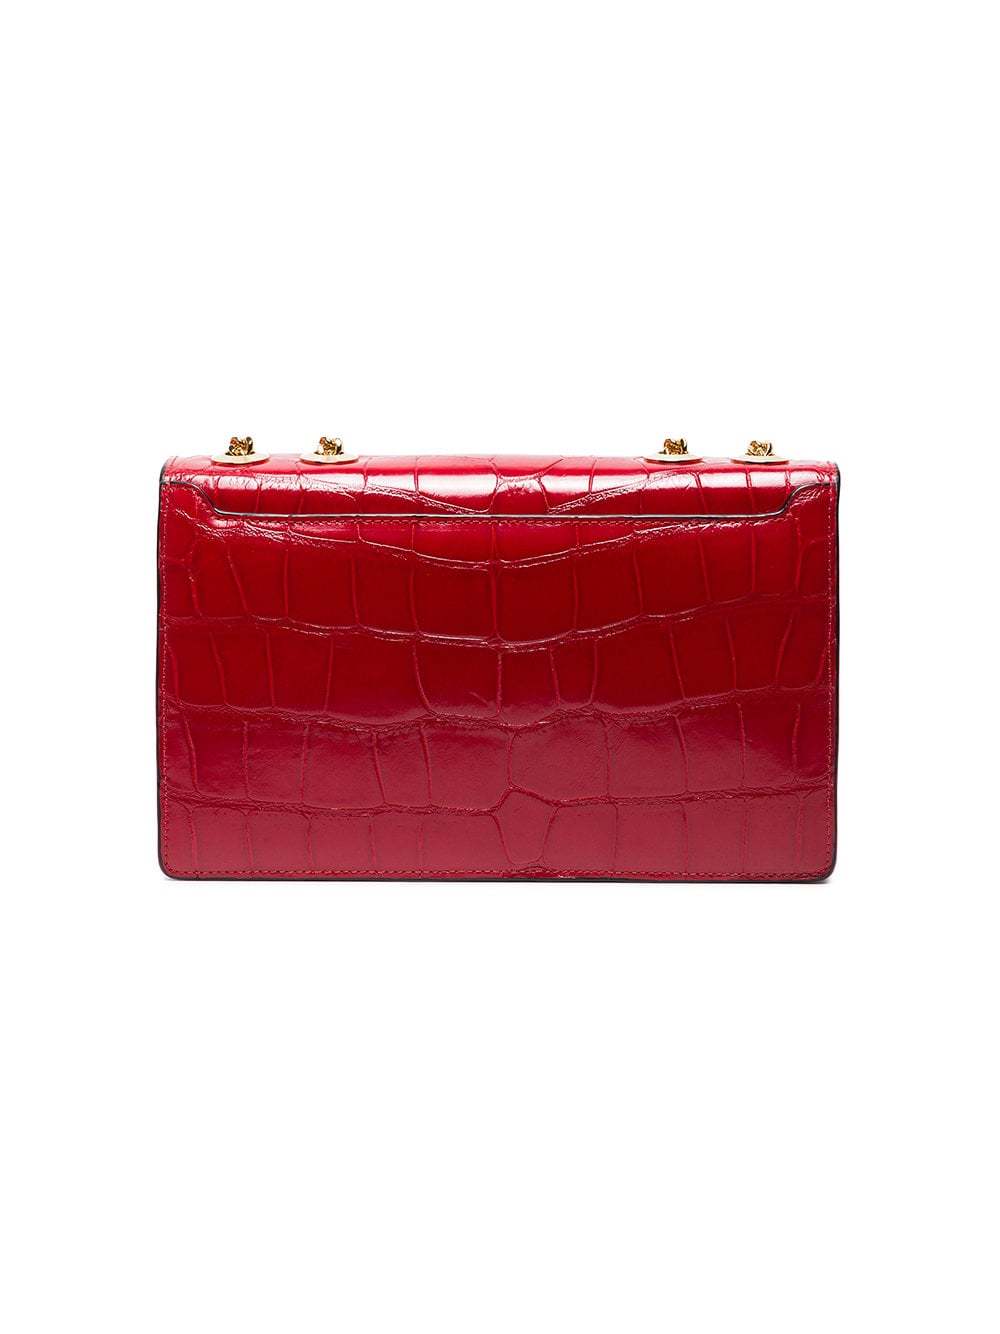 Stalvey Cerise Red 25 Alligator Shoulder Bag, $13,200 | farfetch.com ...